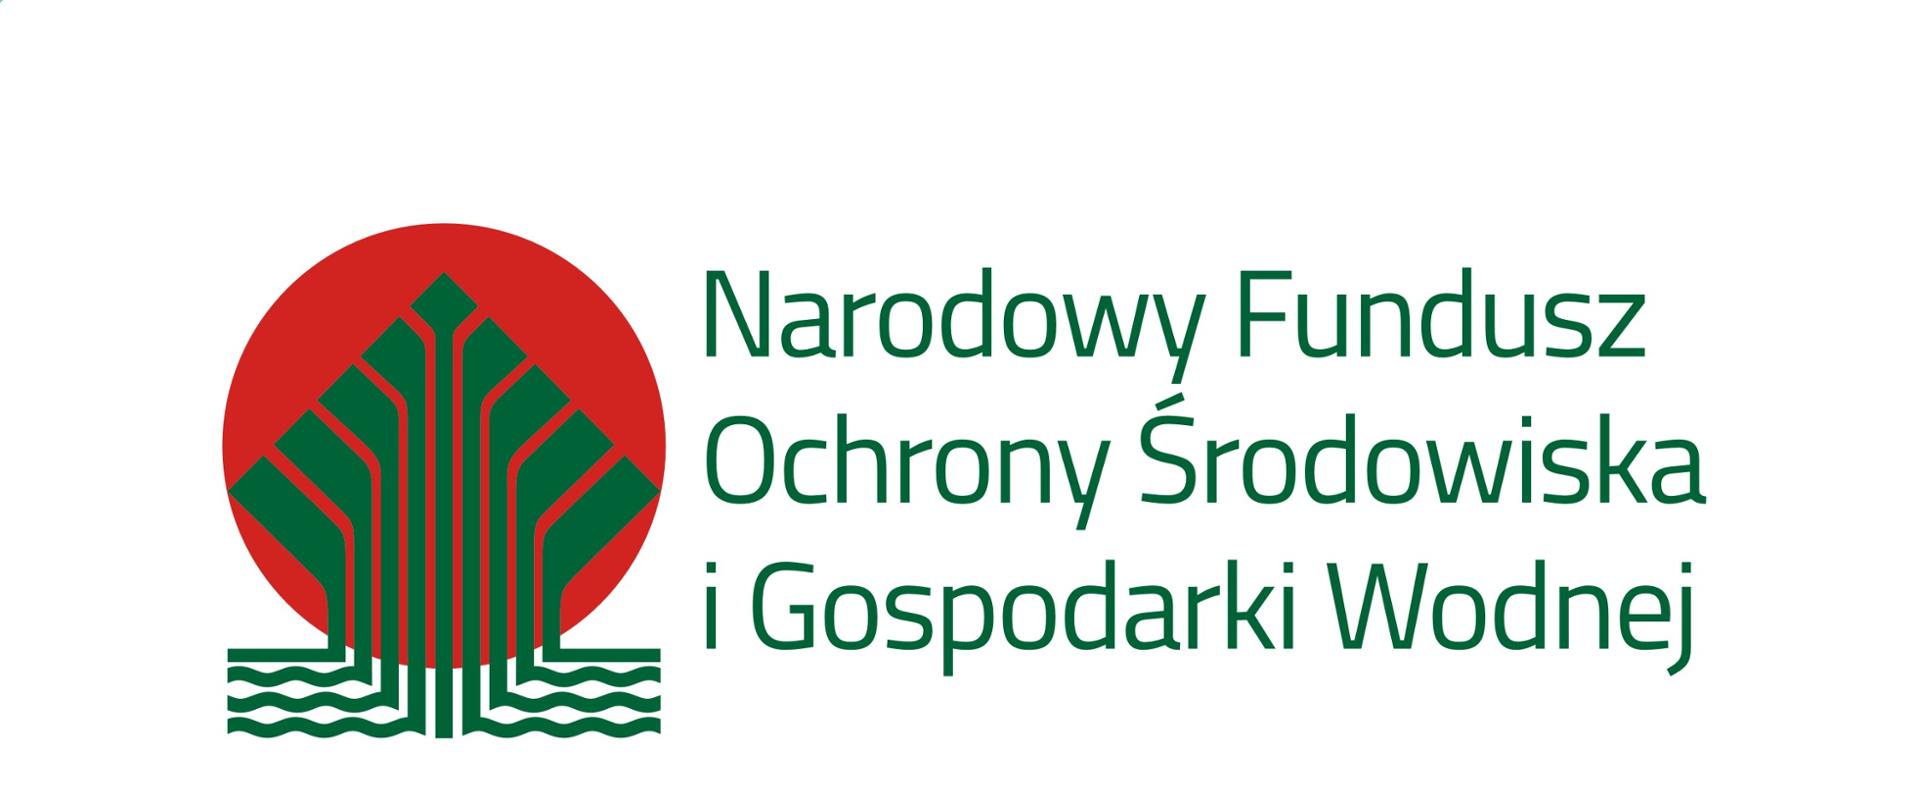 Pełen logotyp NFOŚiGW - kolor - Narodowy Fundusz Ochrony Środowiska i Gospodarki Wodnej - Portal Gov.pl